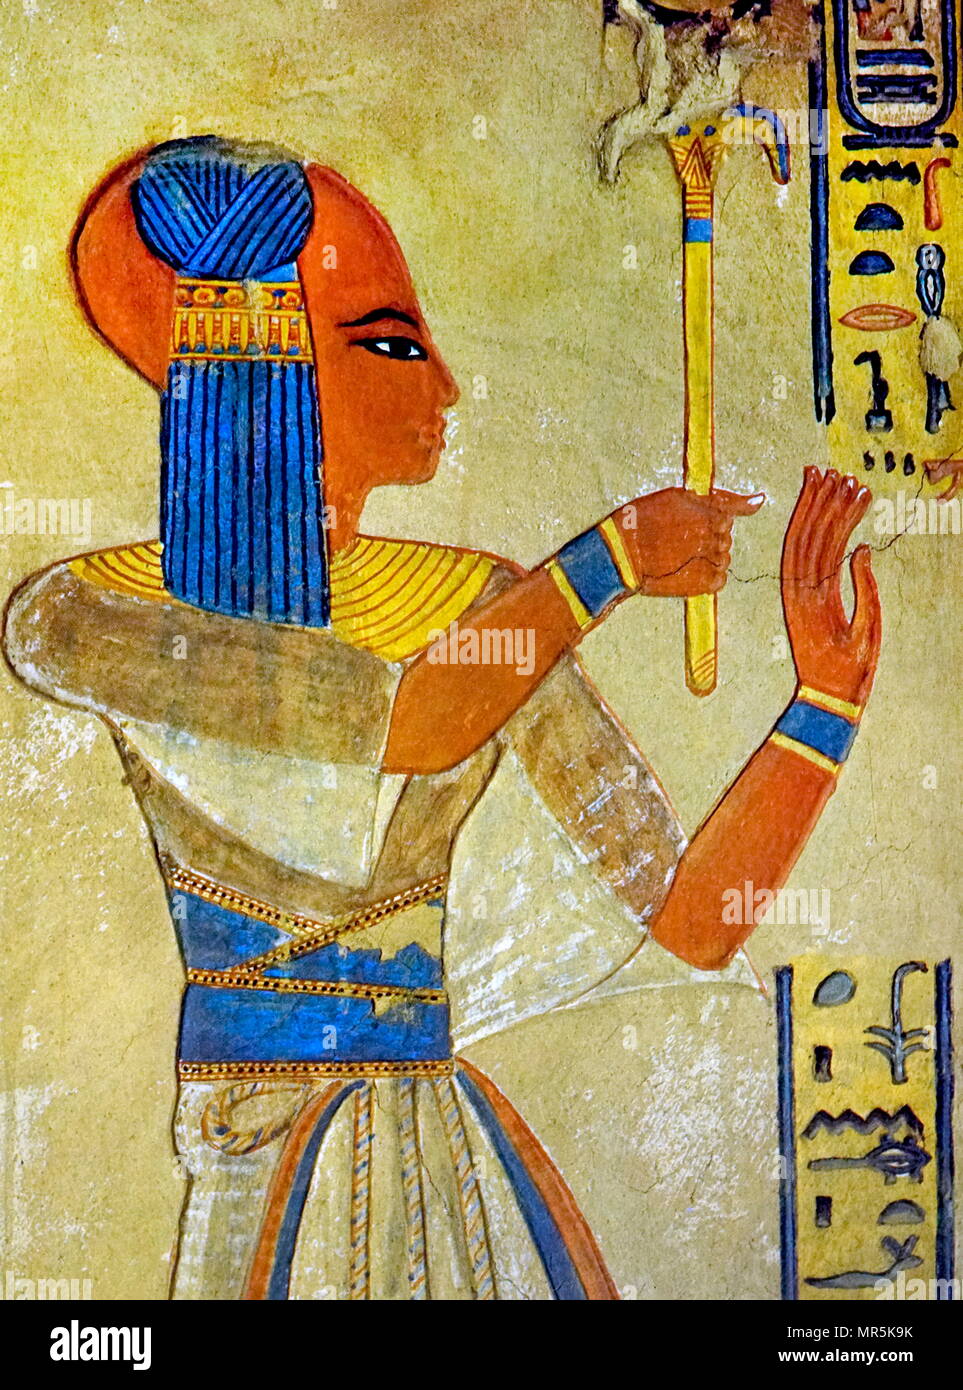 Wandmalerei Darstellung Prinz Amun-her-khepeshef der älteste Sohn und Erbe von Pharao Ramses III. Wie viele seiner Brüder, er wurde benannt nach dem Sohn von Ramses II., Amunherkhepeshef. Er starb, als er etwa 15 Jahre alt war. Er ist auch als Ramses Amun-her-khepeshef erwähnt. Er ist nicht identisch mit seinem Bruder Ramses VI., der auch genannt wurde Amun-her-khepeshef bevor er Pharao wurde. Er ist dargestellt in seiner gut erhaltenen Grab QV 55 (im Tal der Königinnen), die er in der 20. Dynastie lebte und starb ca. 1160 v. Chr. Stockfoto